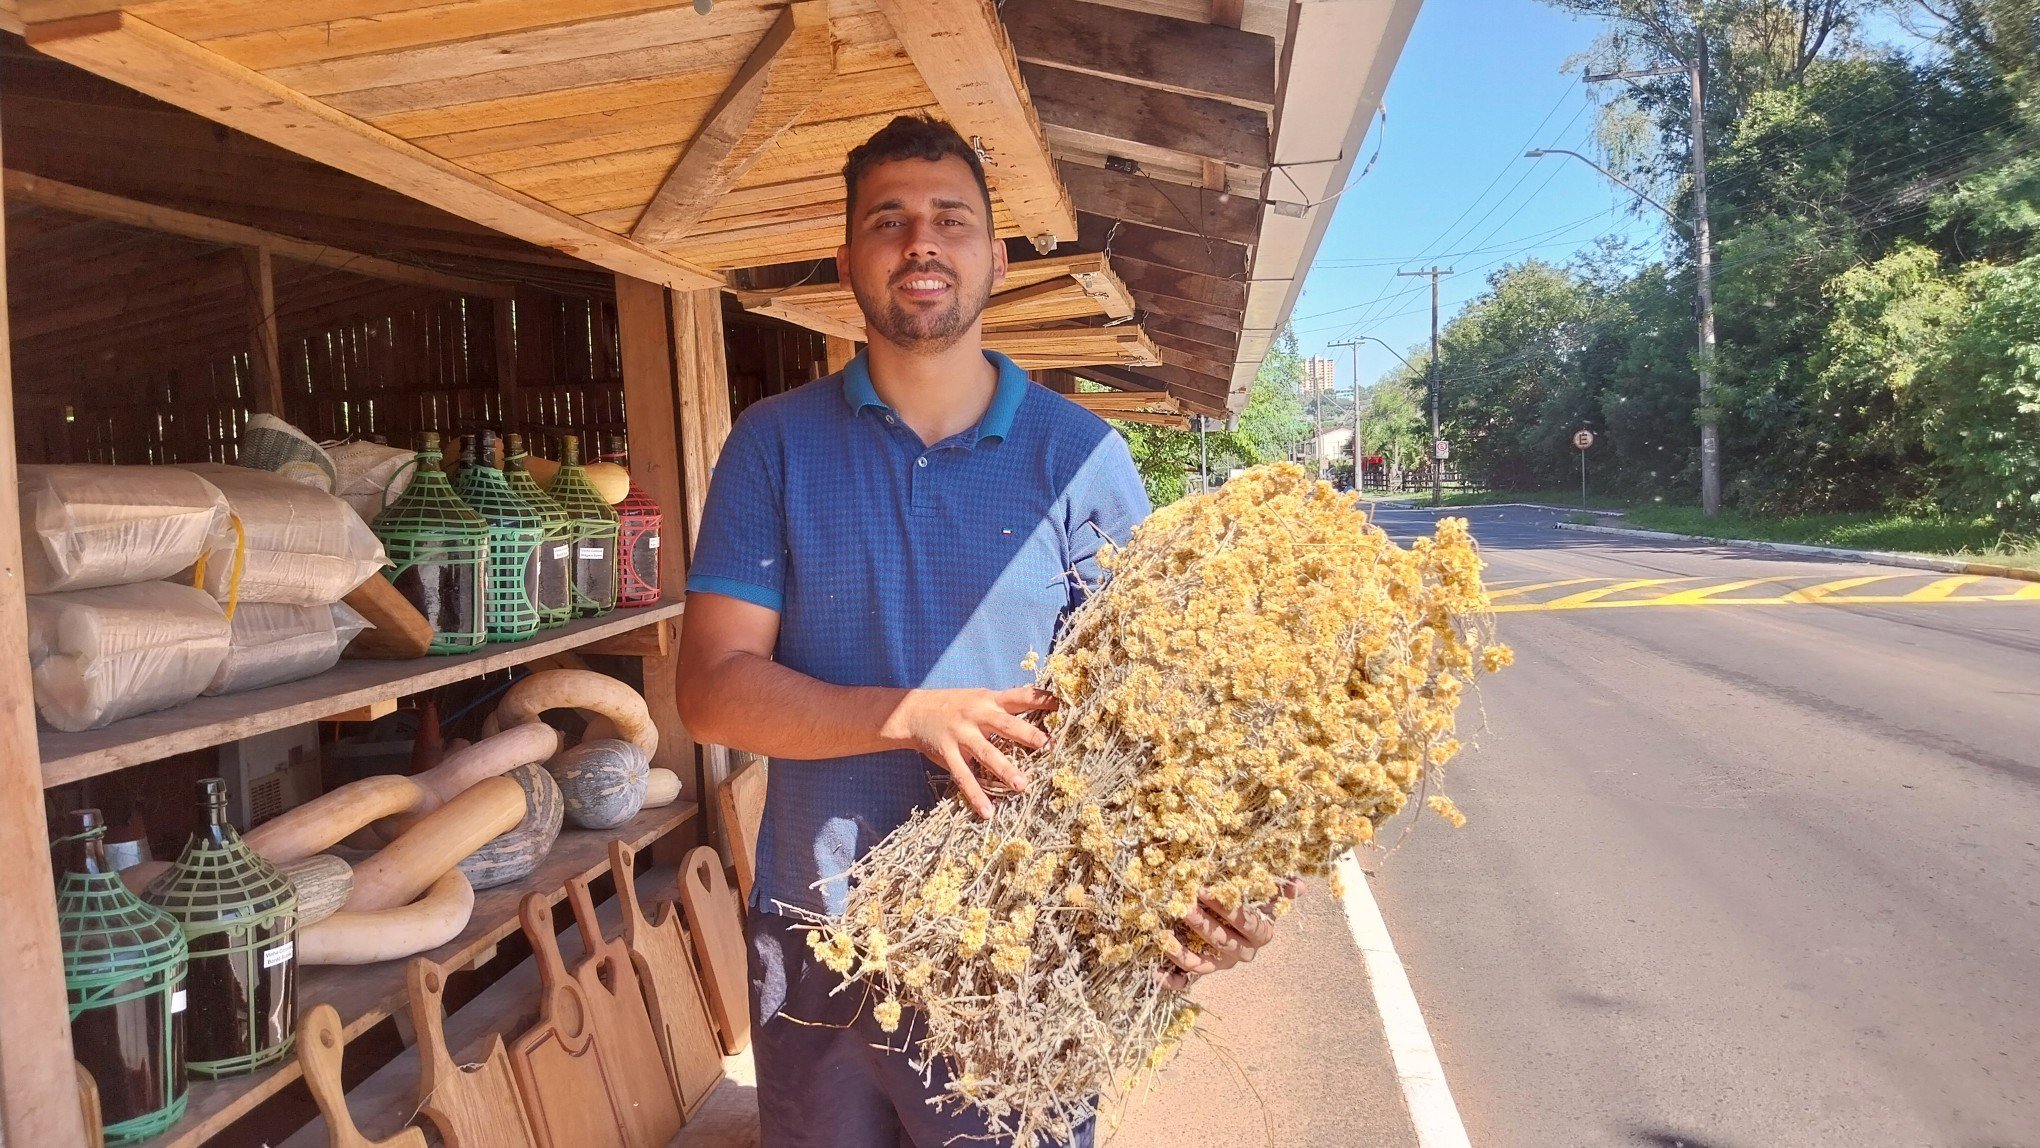 PÁSCOA: "Percebo que essa tradição não se vê mais nas ruas", diz vendedor às vésperas da colheita de macela